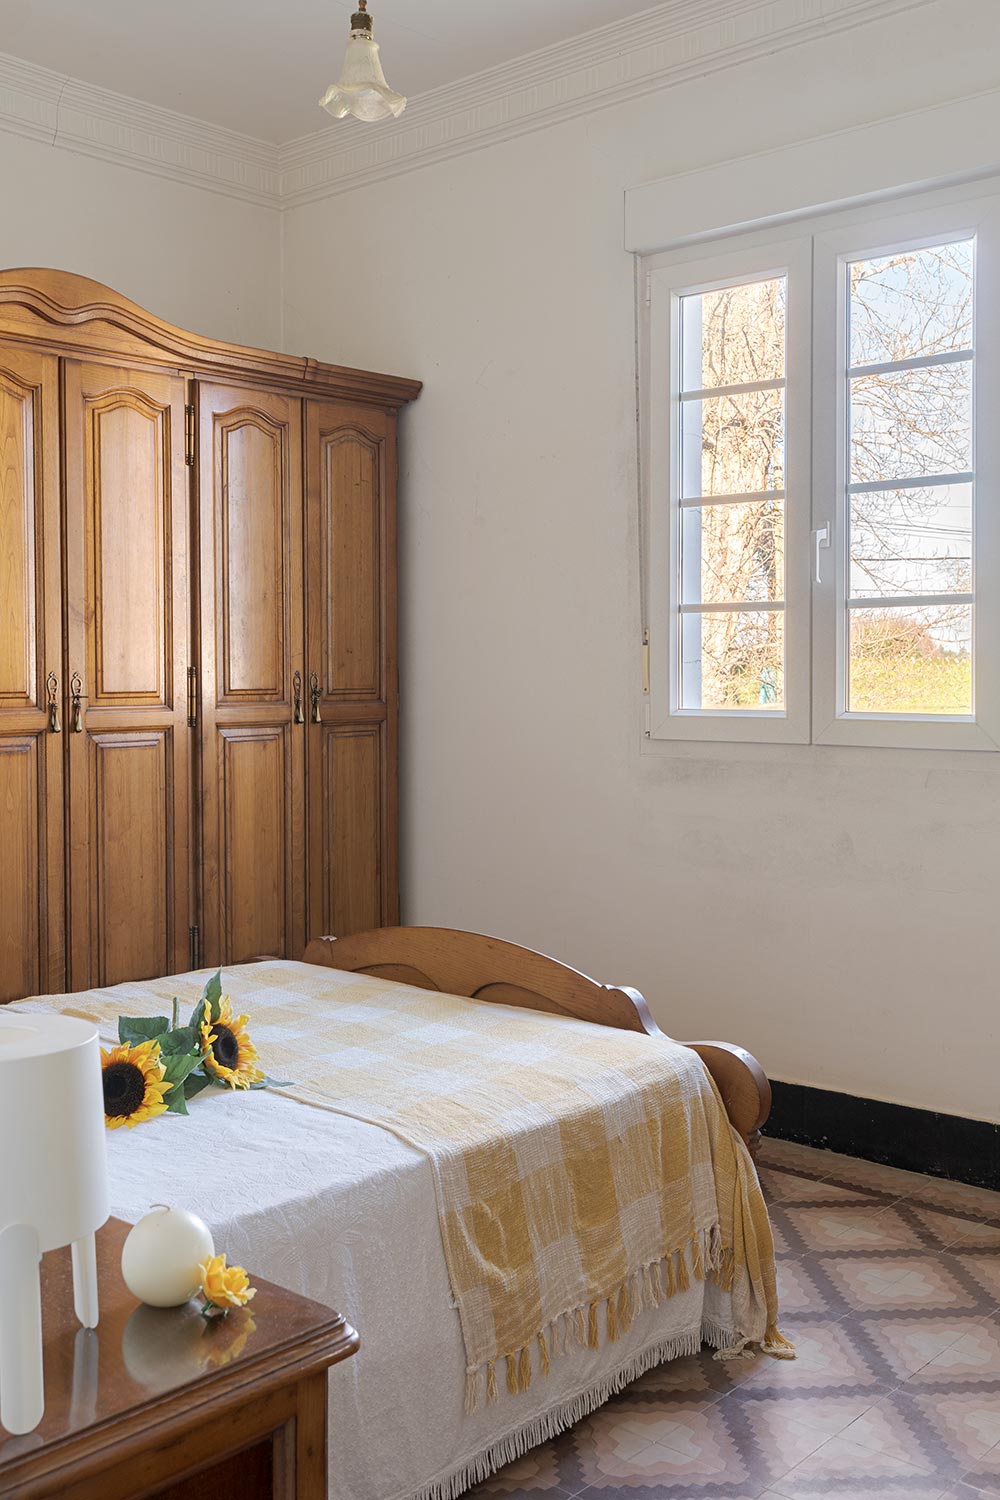 Dormitorio luminoso con cama de madera, armario clásico y detalles florales, destacando una atmósfera tranquila y tradicional en una casa de Bergondo, A Coruña